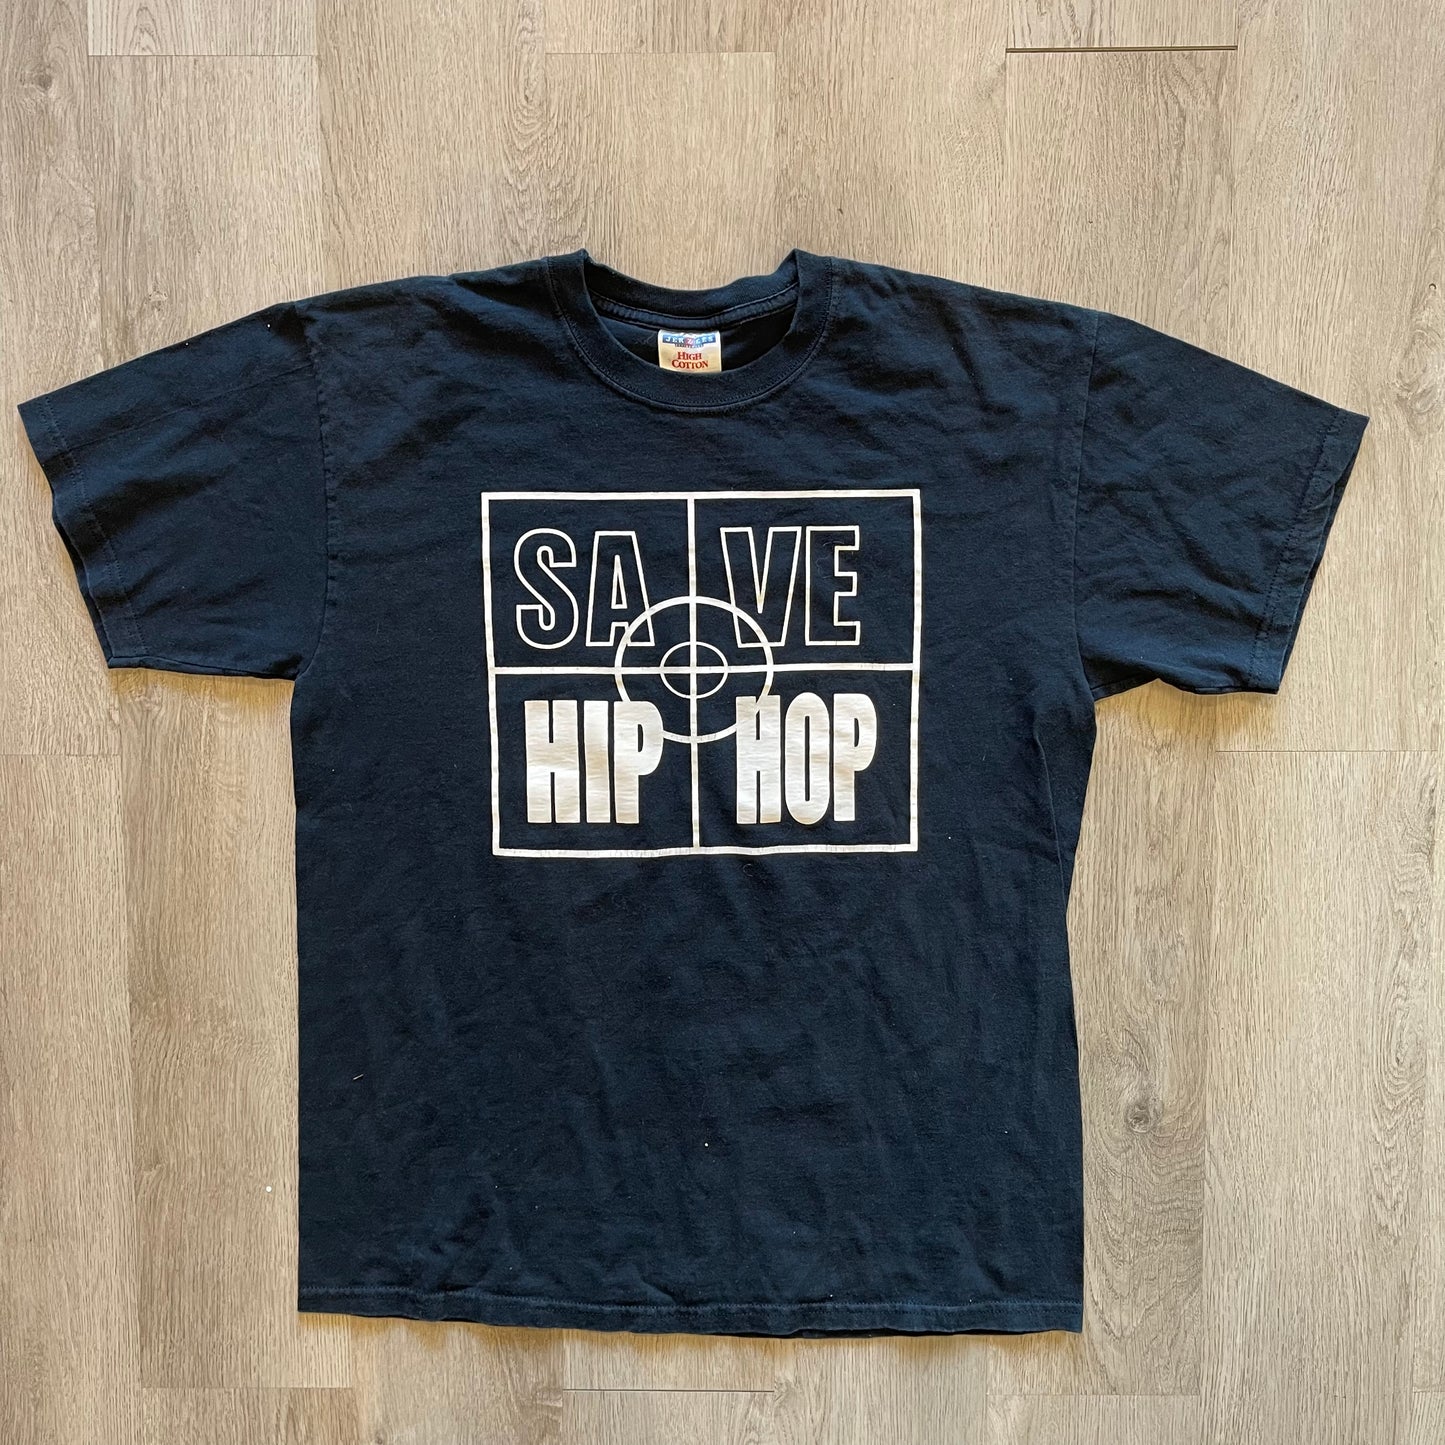 Vintage save HipHop T-shirt